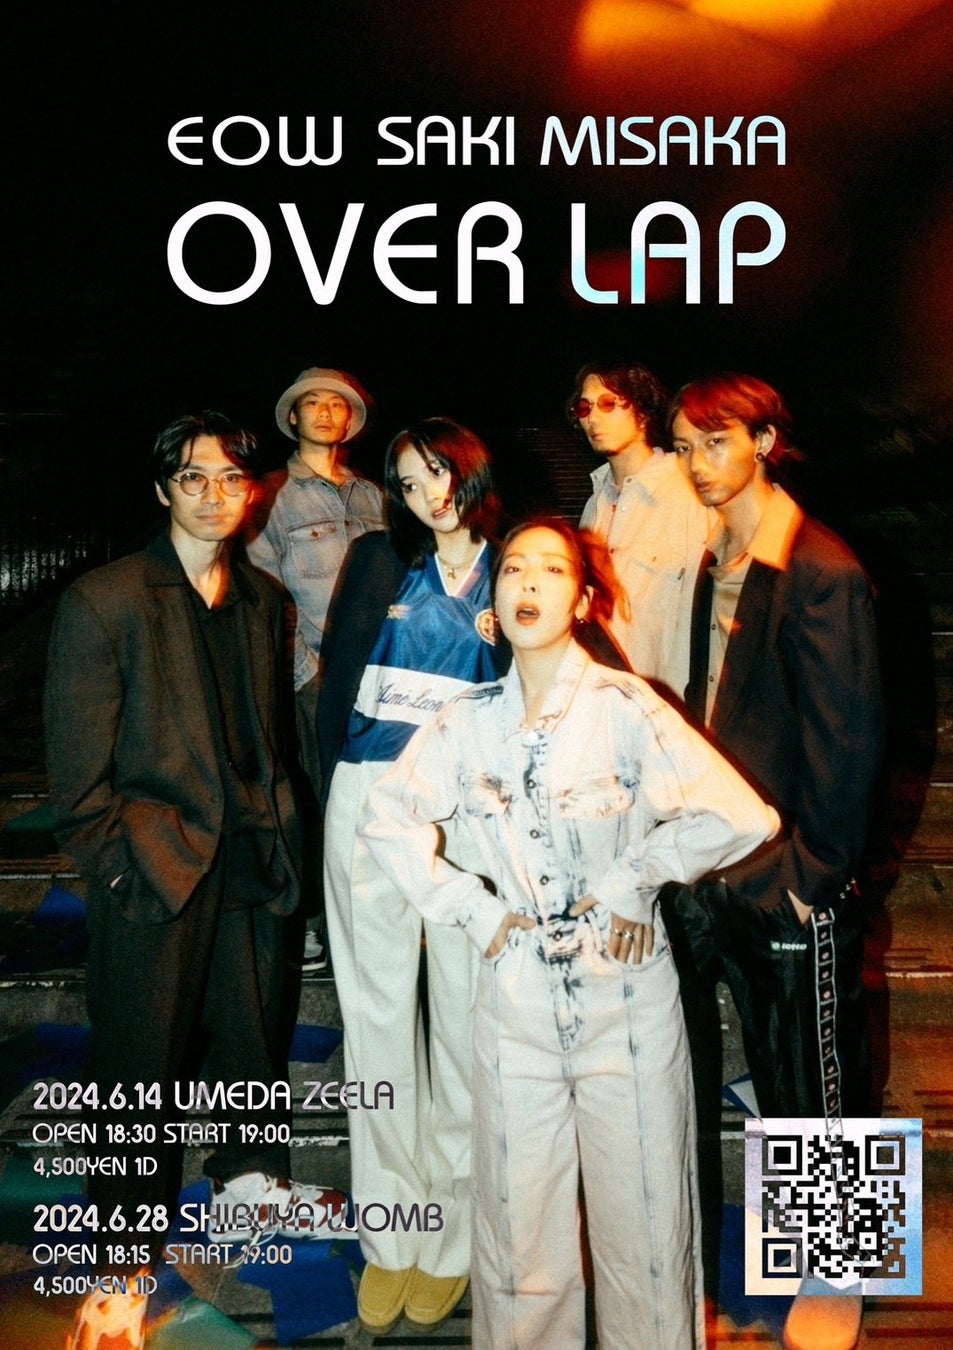 EOW×Saki Misakaのツーマンライブが東京・大阪で開催「OVERLAP」TIGETにてチケット独占抽選申込受付中